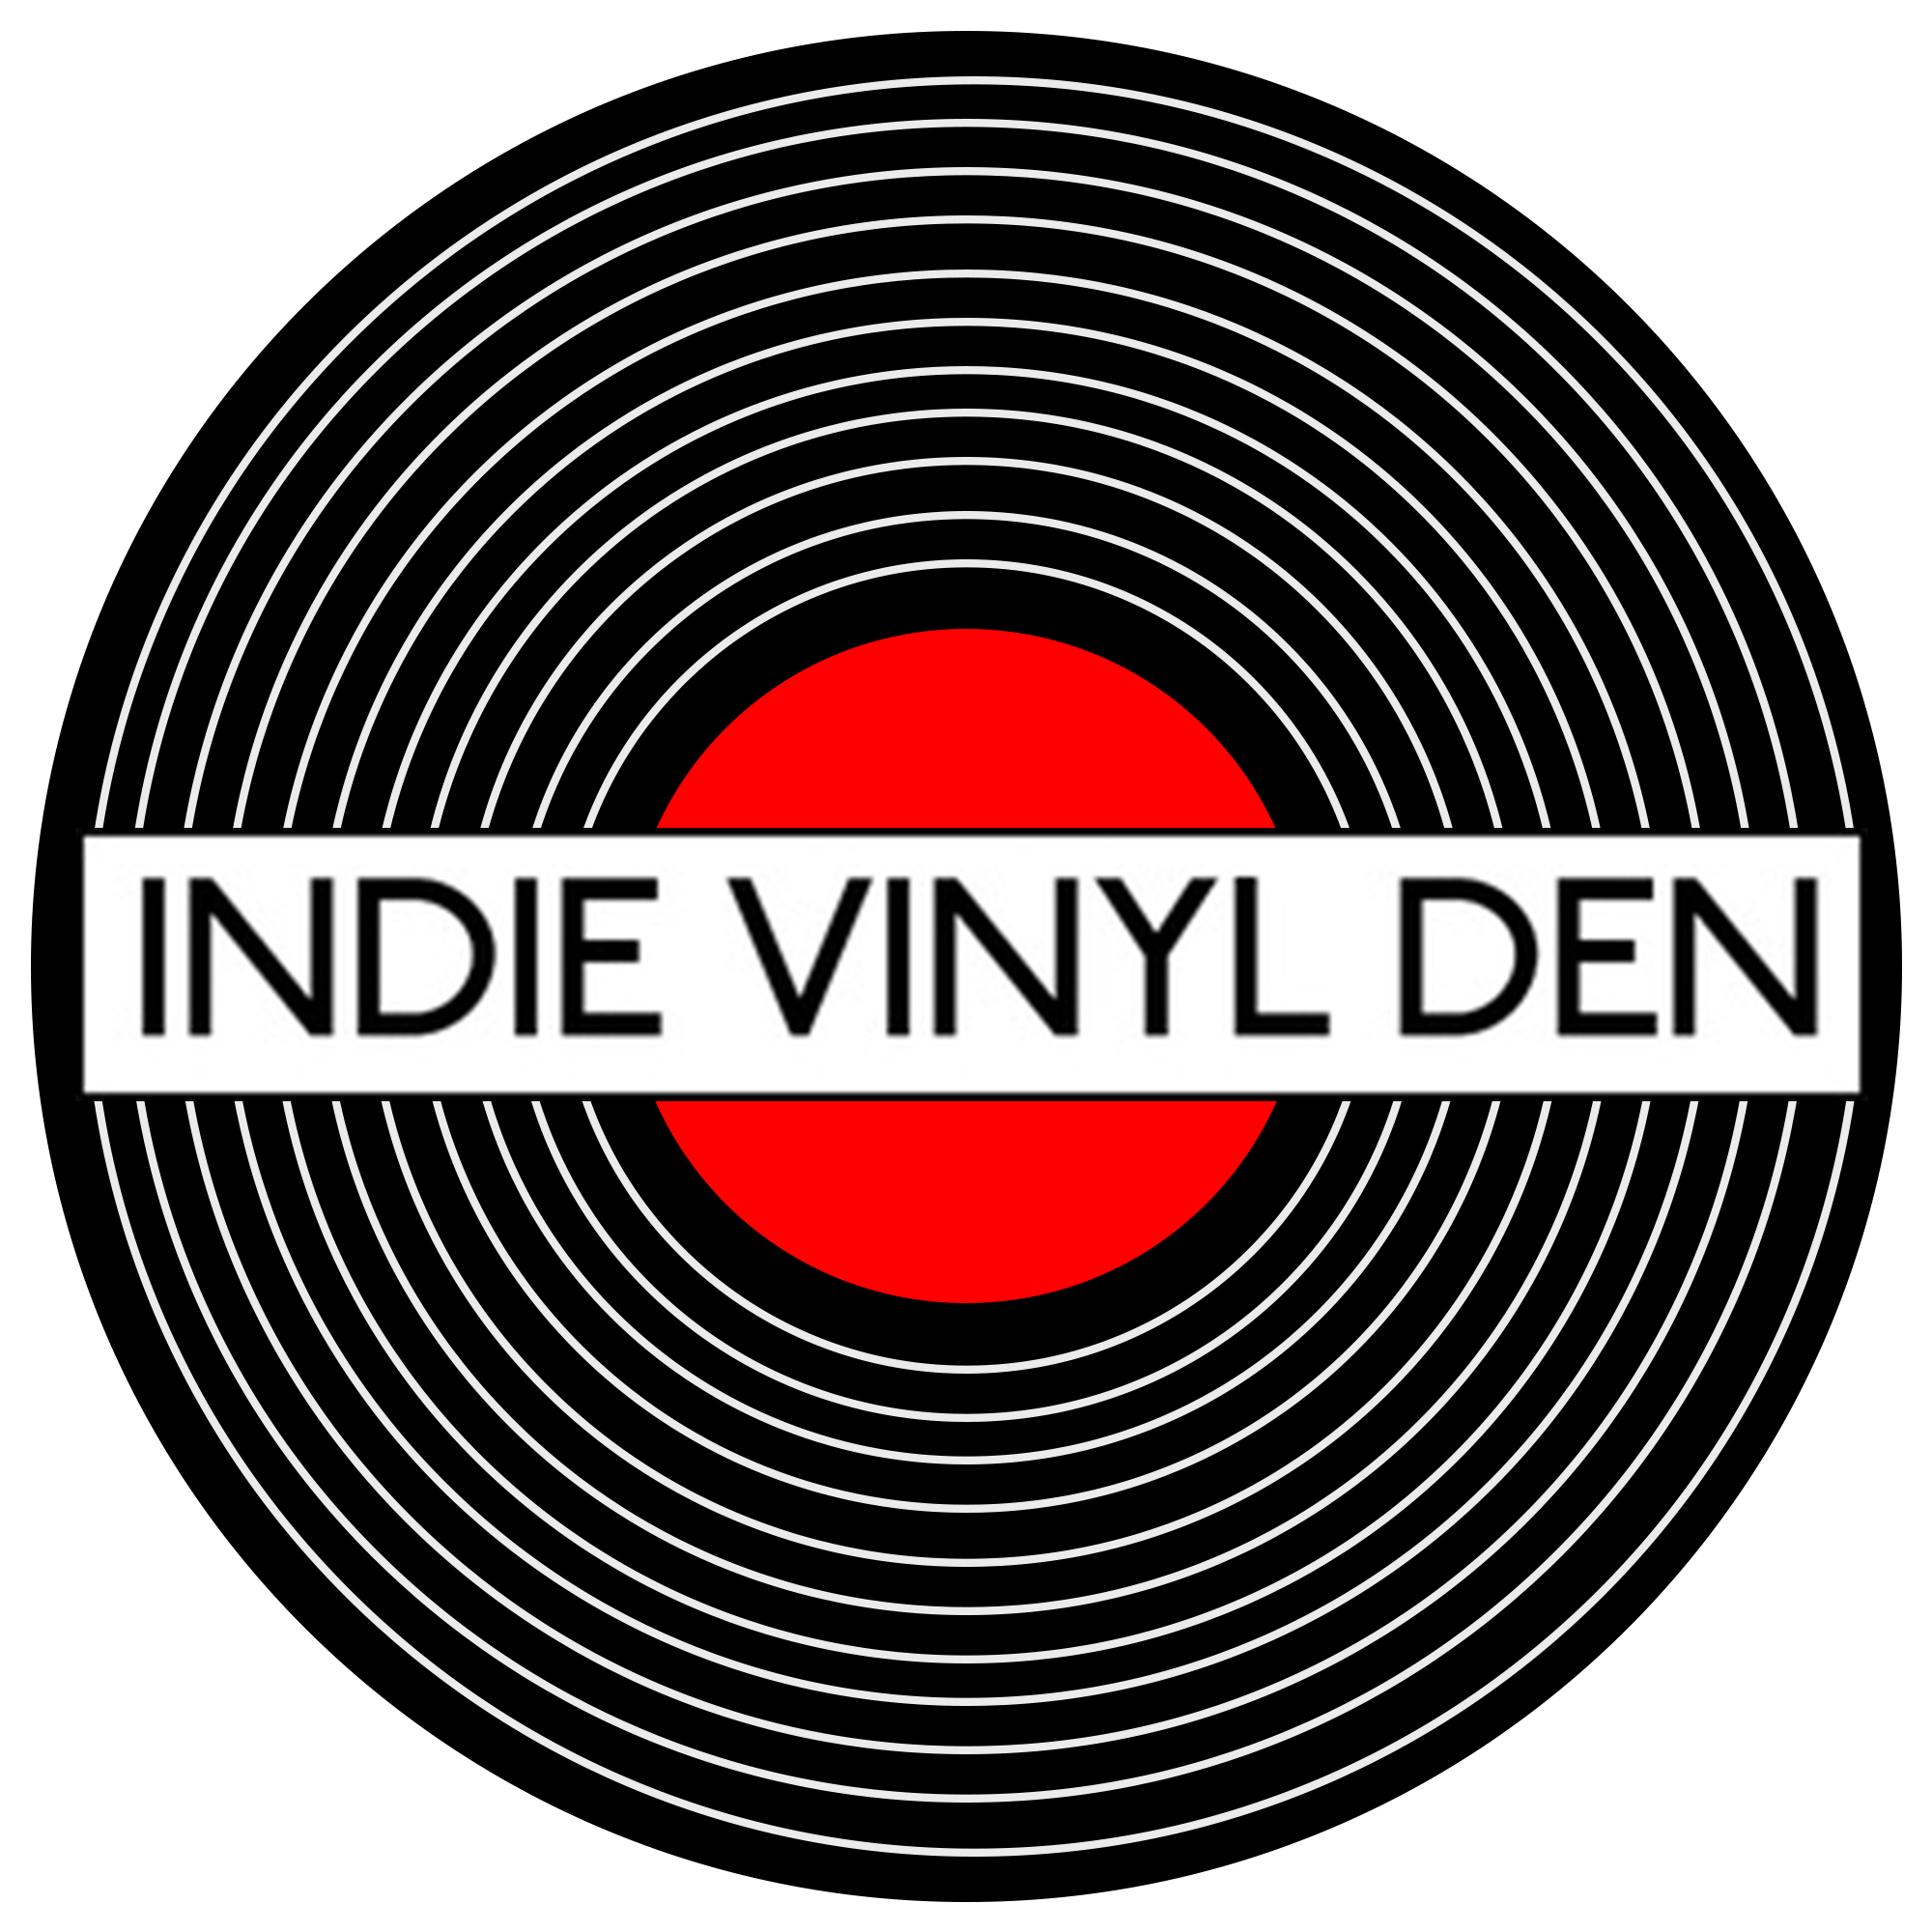 www.indievinylden.com